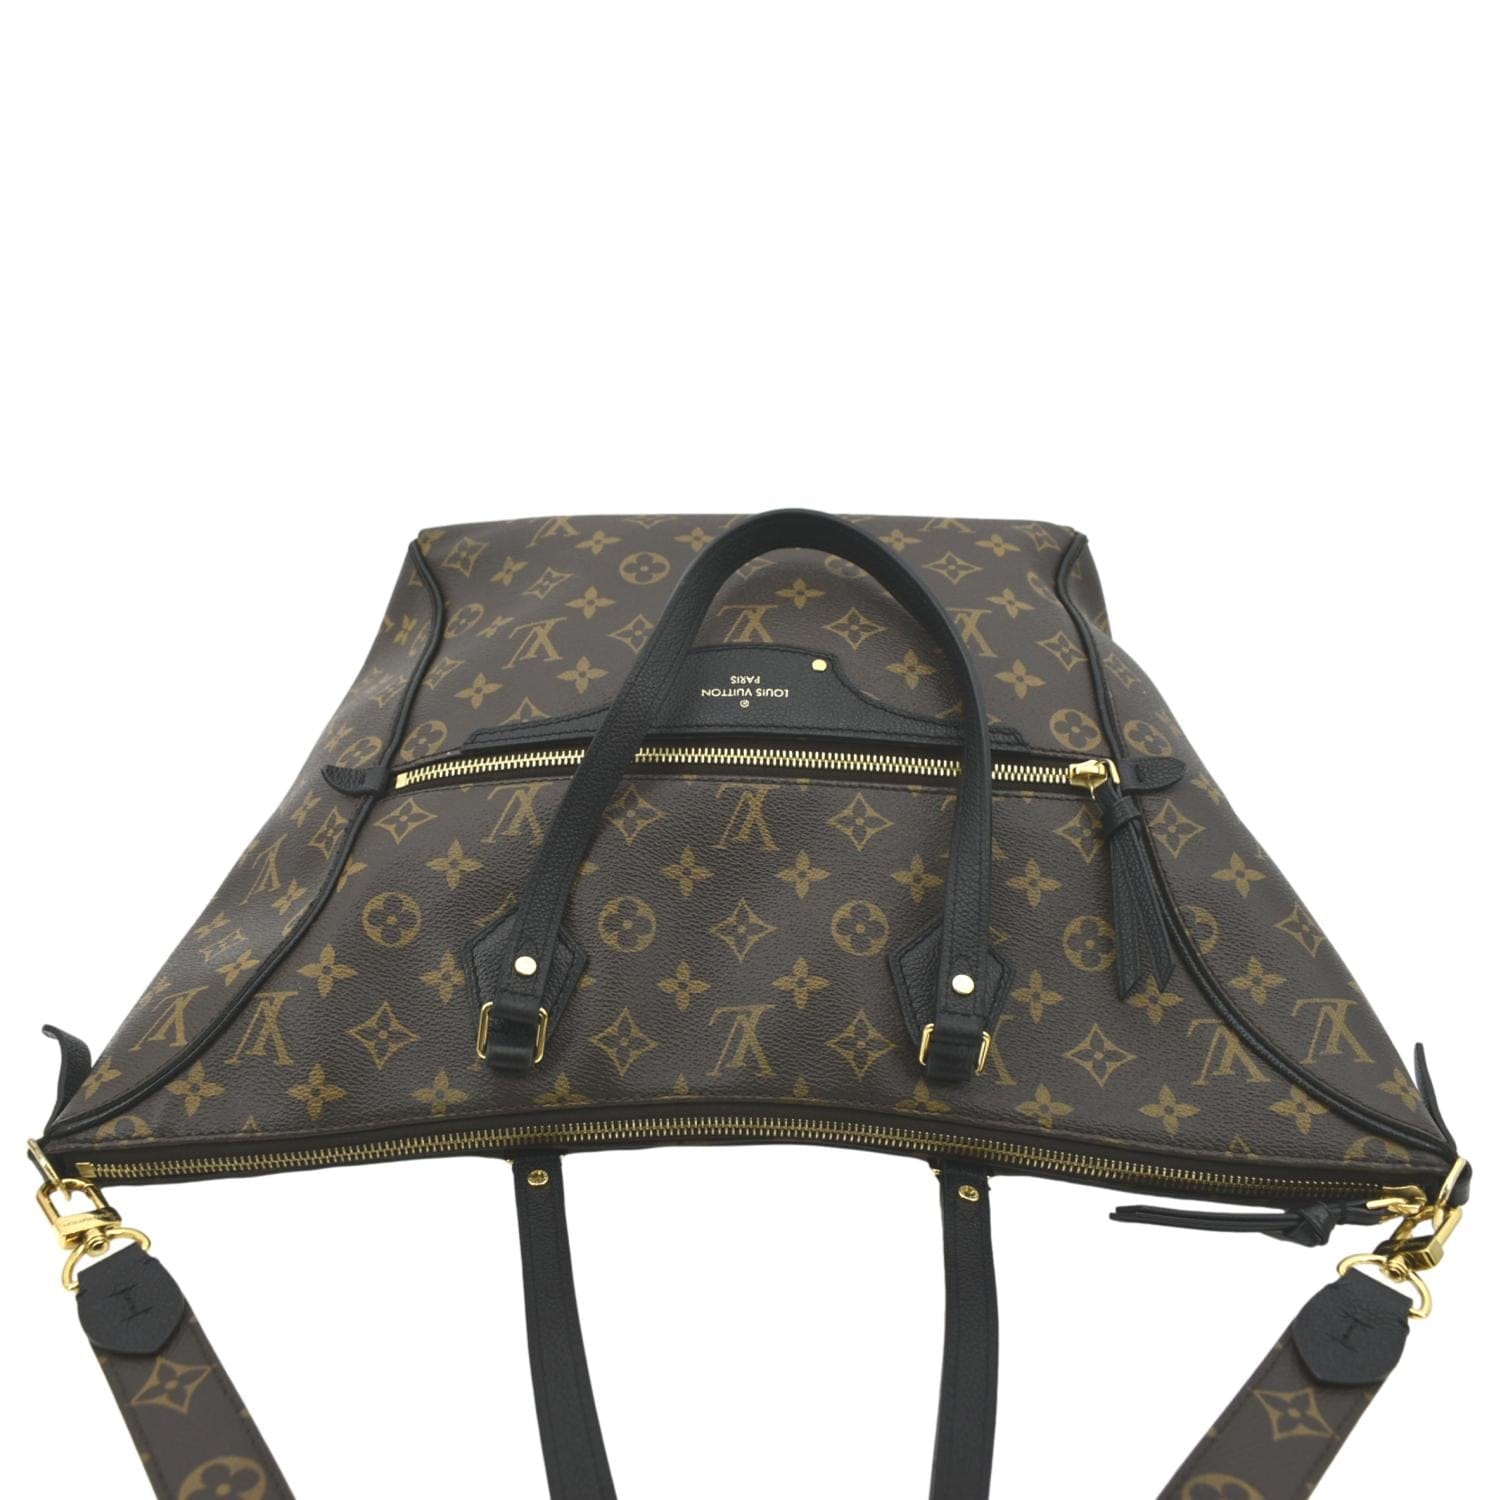 Louis Vuitton Tournelle Monogram mm Hand Shoulder Tote Bag M44023